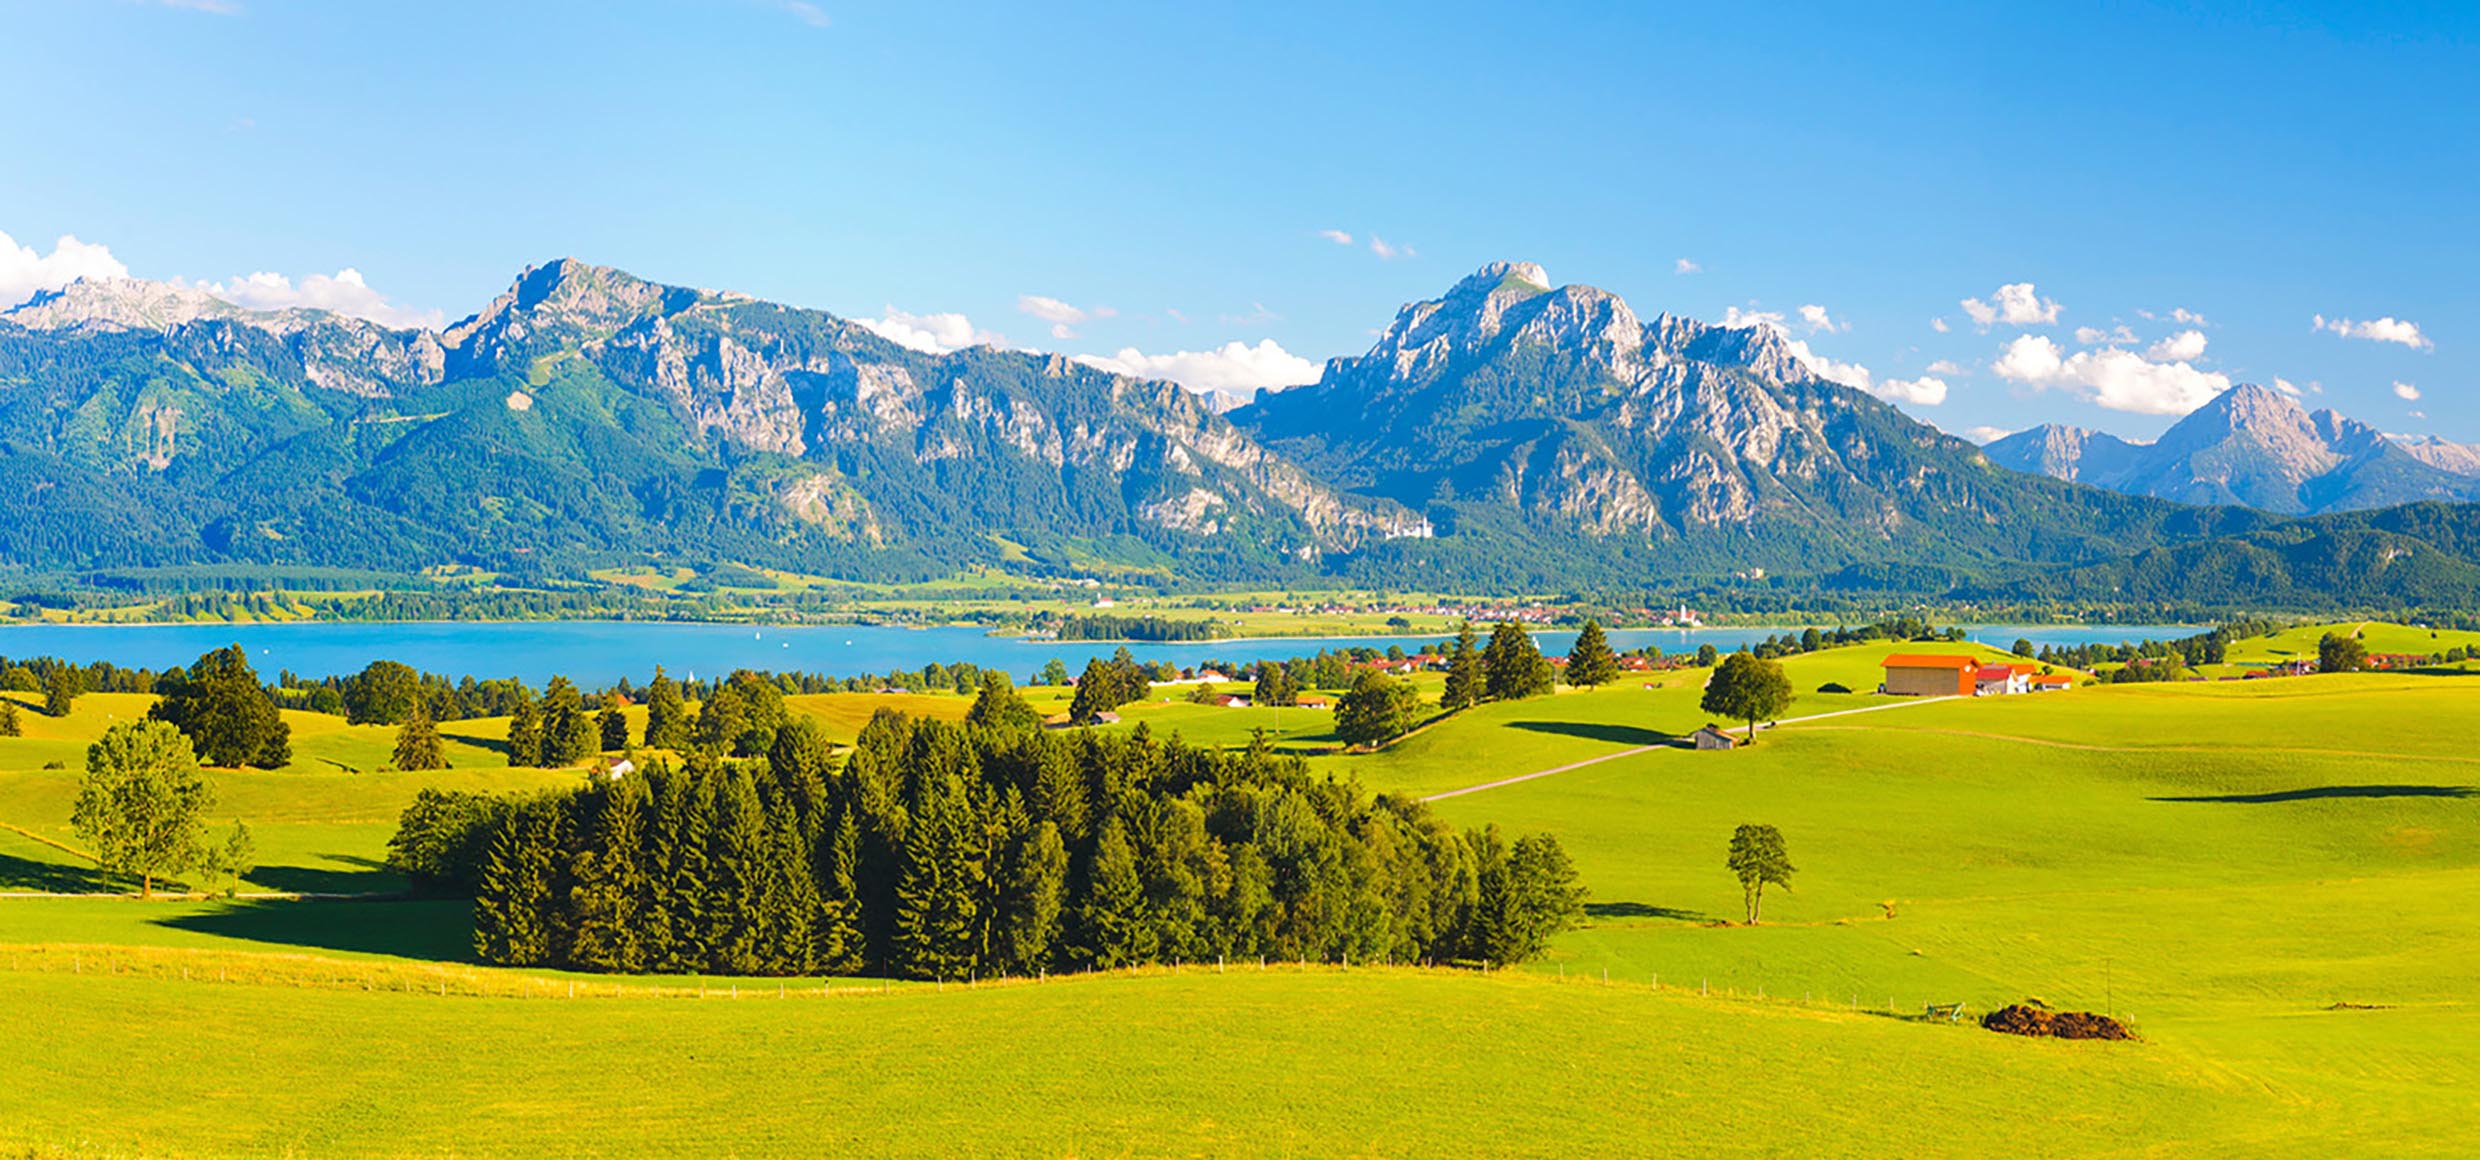 Panorama Landschaft in Bayern am Forggensee mit Blick auf die Alpenkette mit Berg Säuling, dem Hausberg der Stadt Füssen